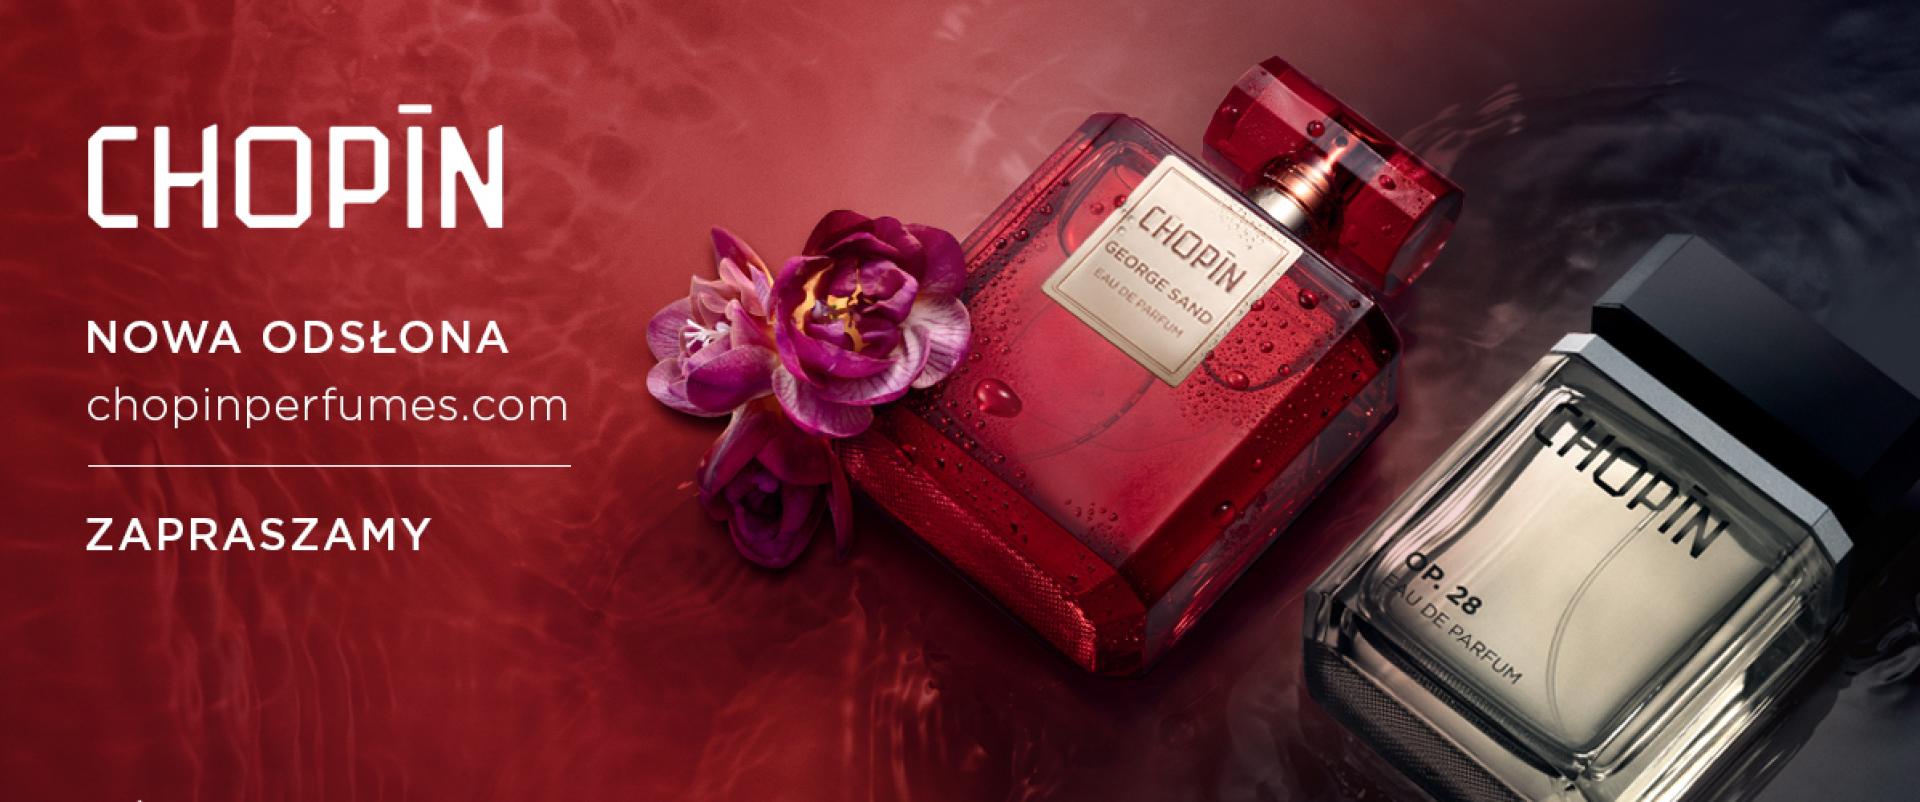 Nowa odsłona internetowa perfum Chopin